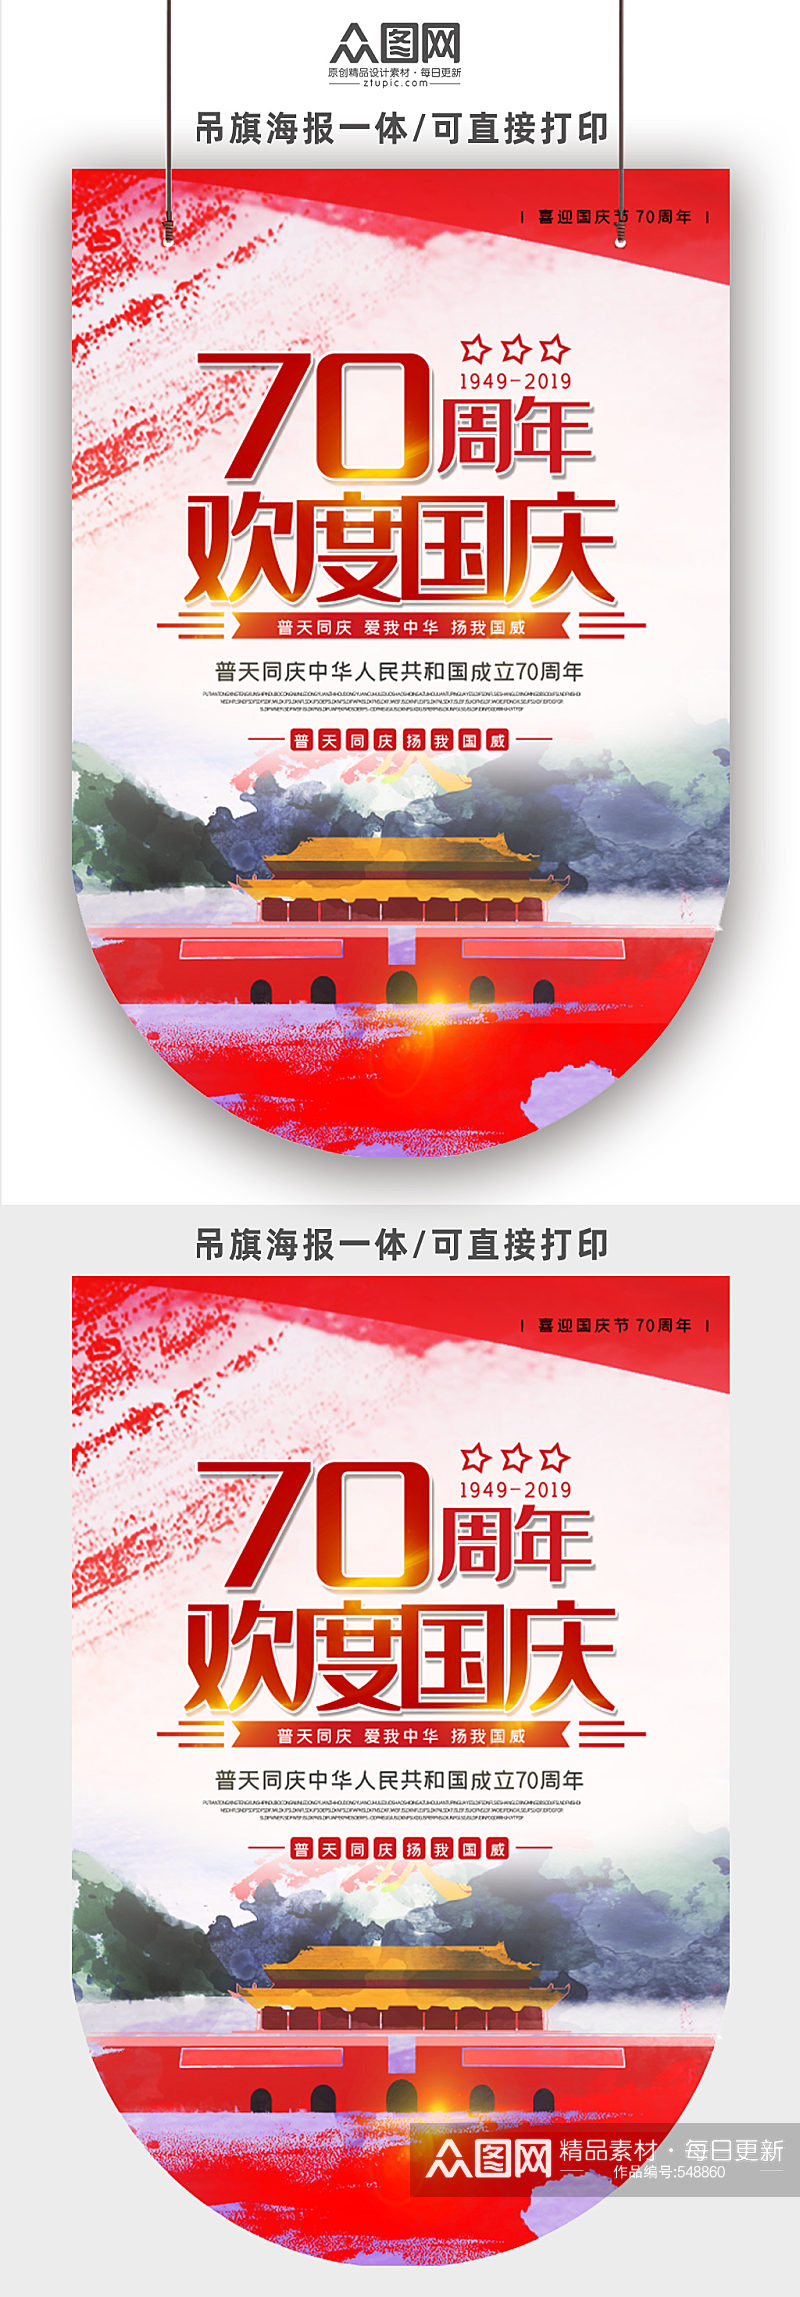 70周年欢度国庆节日吊旗素材